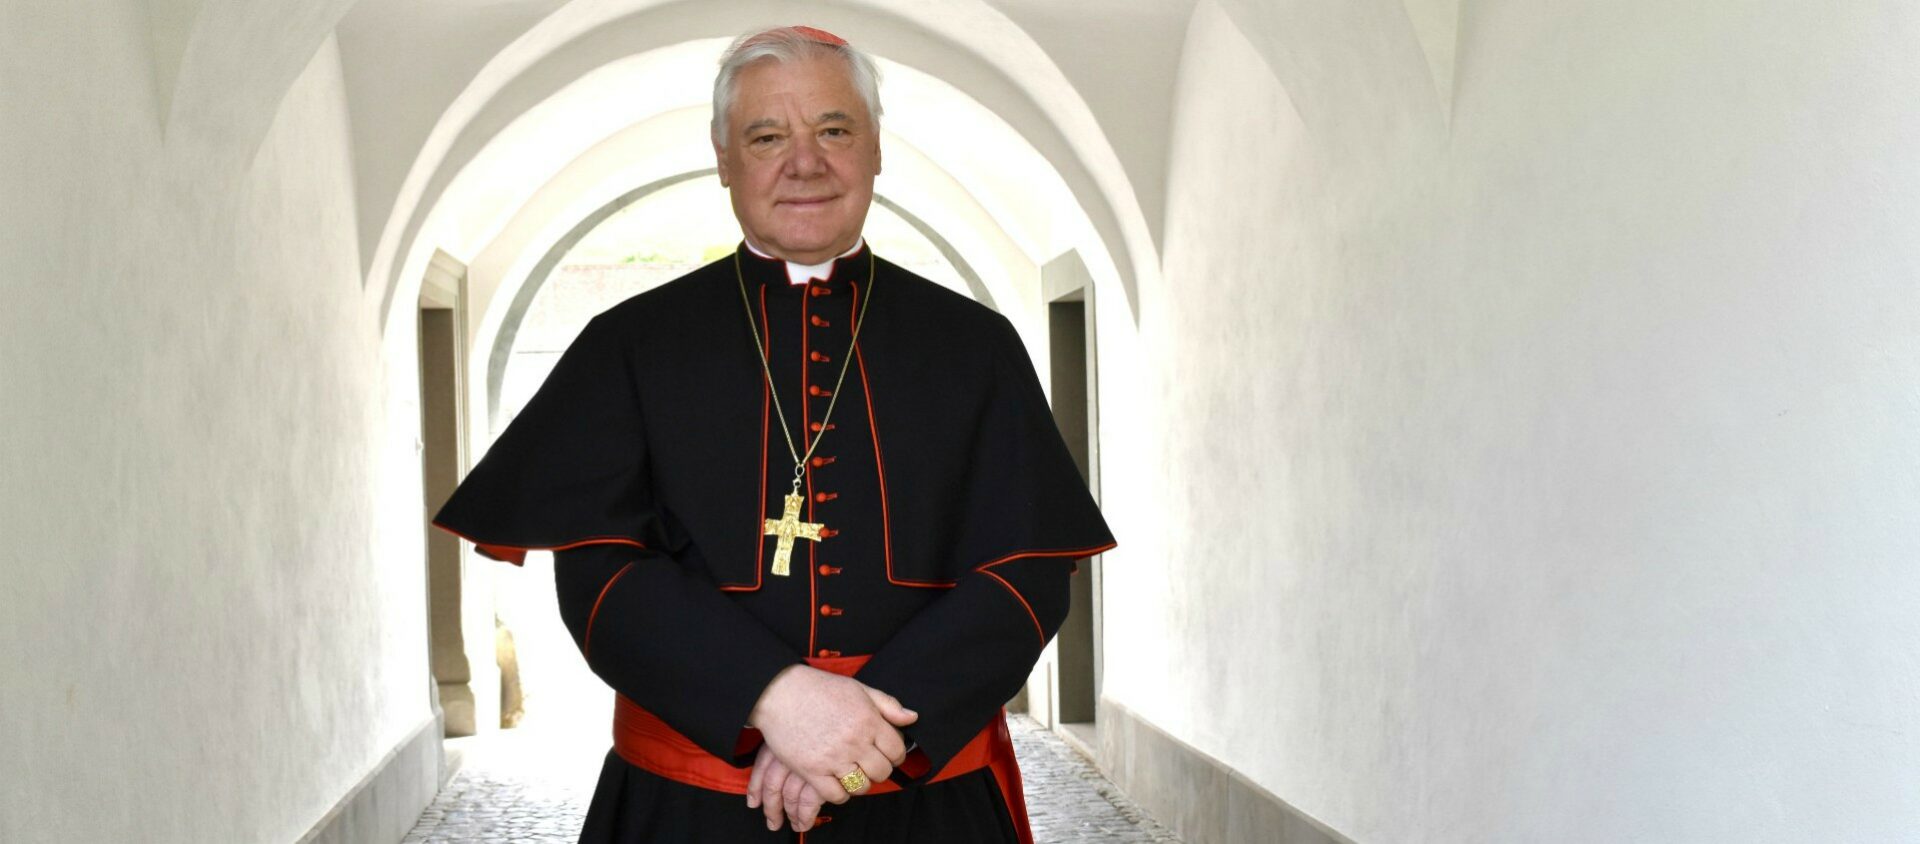 Le cardinal Gerhard Ludwig Müller très critique face à la lutte contre le Covid-19  | © Jacques Berset